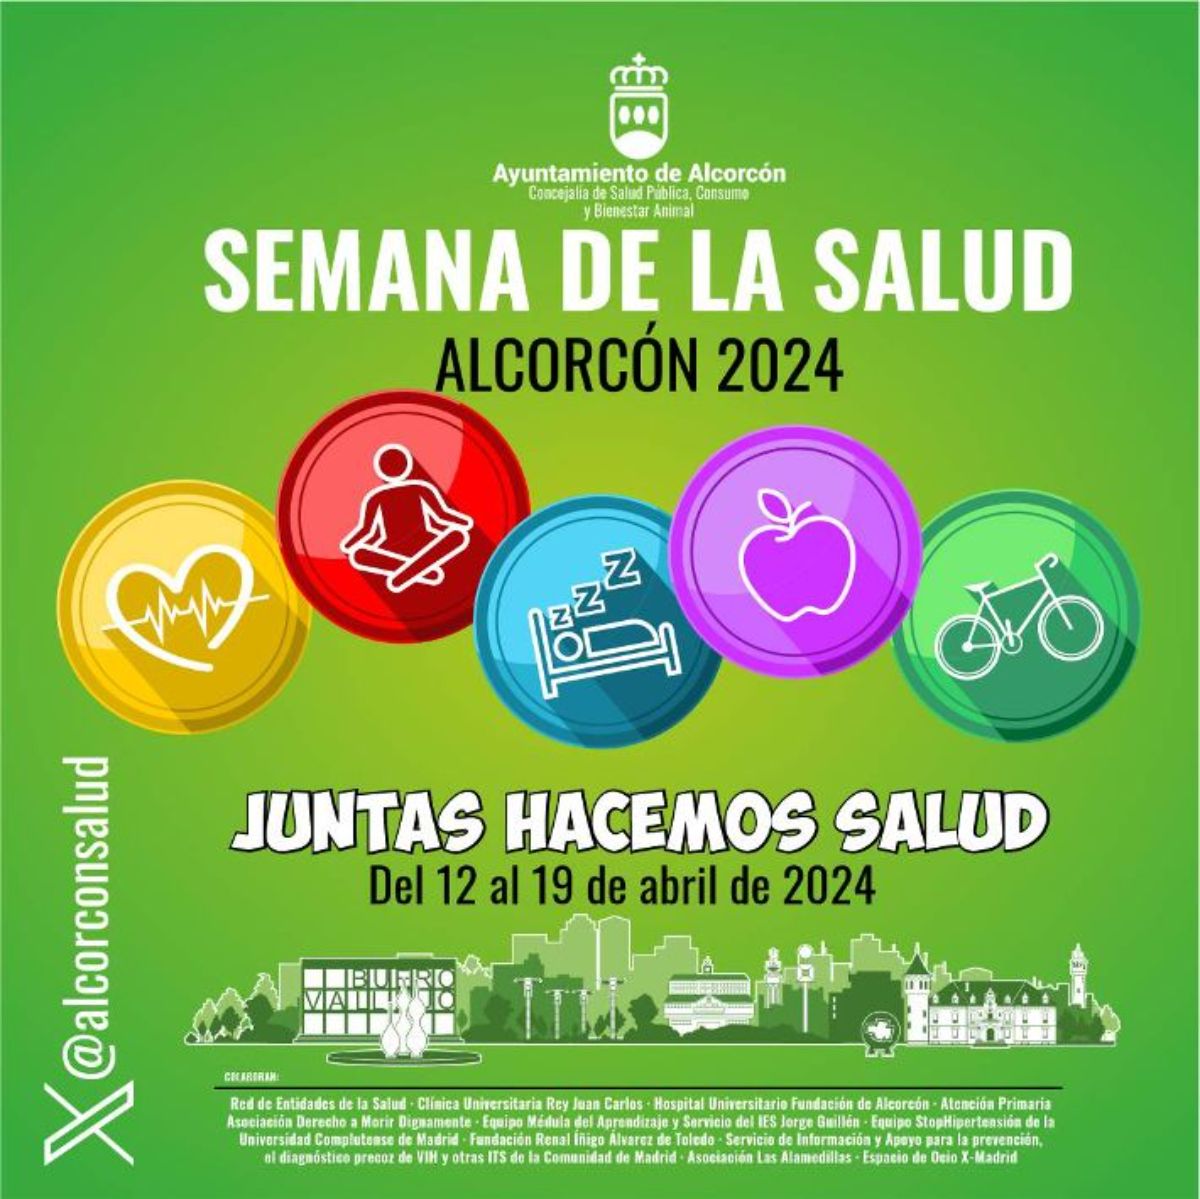 Así se conmemorará la Semana de la Salud en Alcorcón